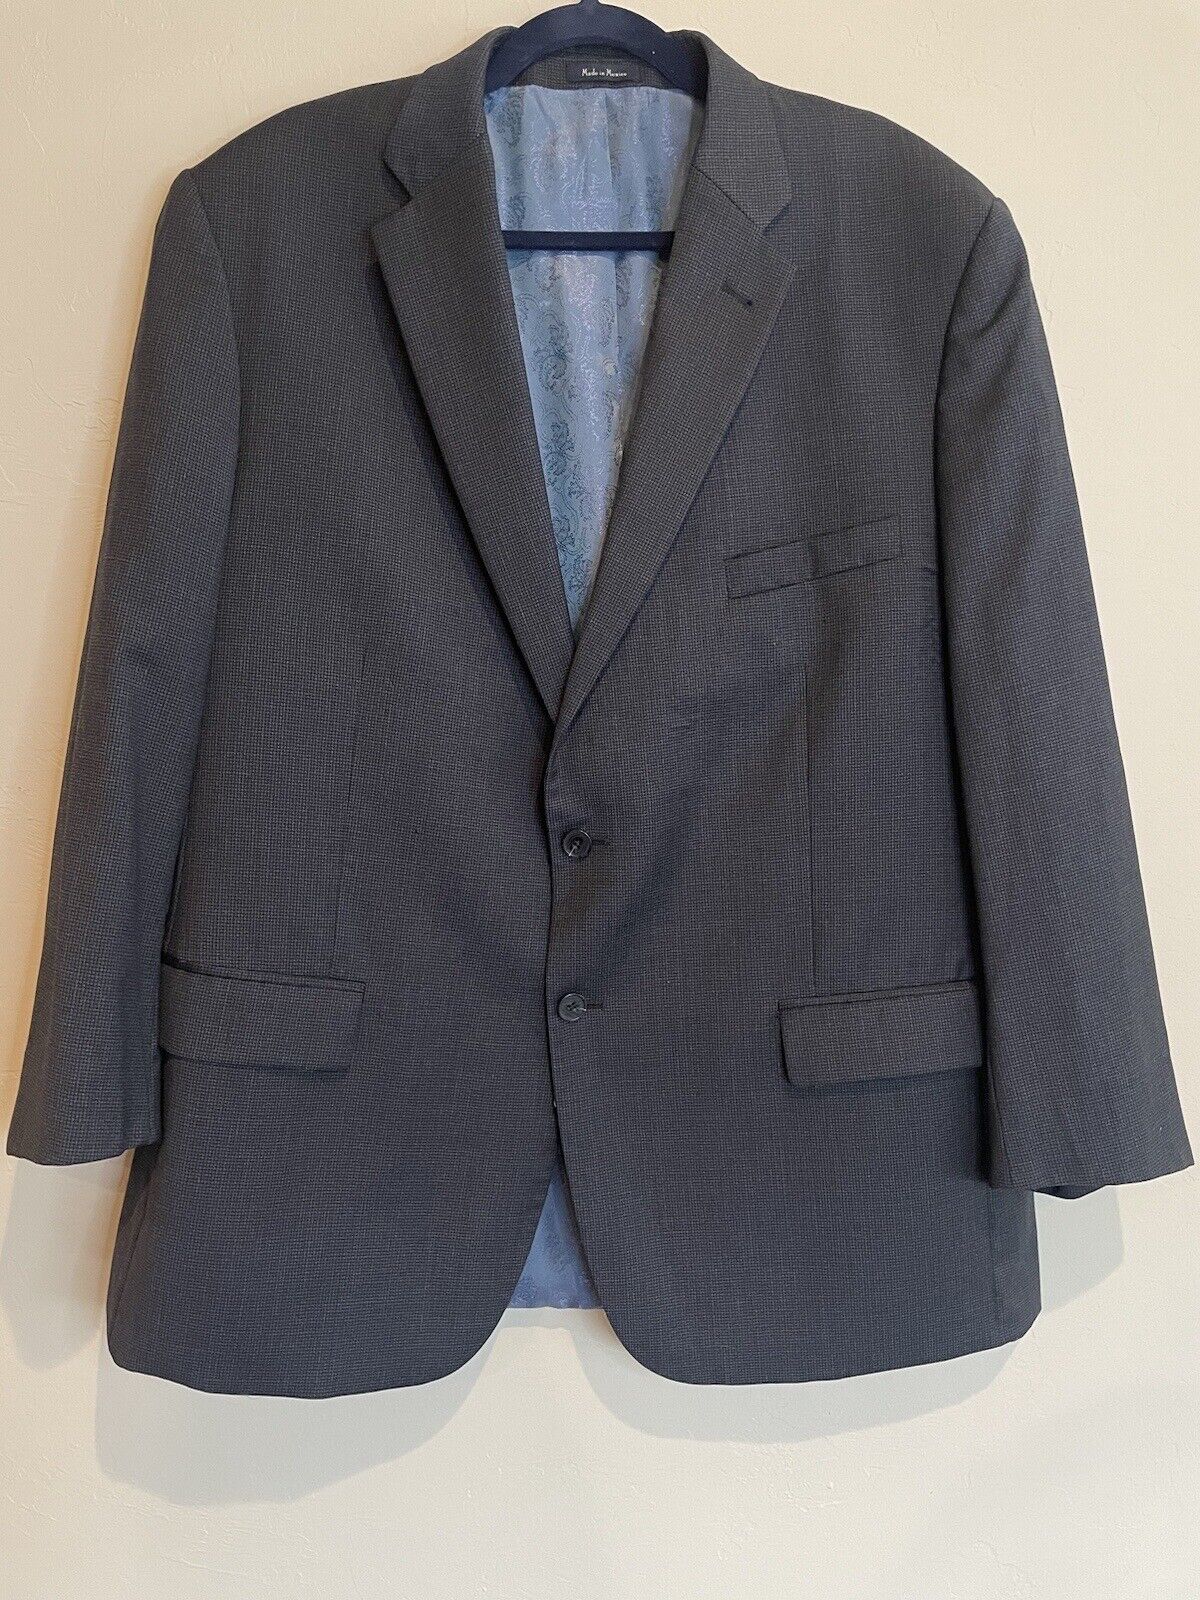 Men’s Navy Gingham TURNBURY Wool Blazer Jacket Sport Suit Coat 48R ...